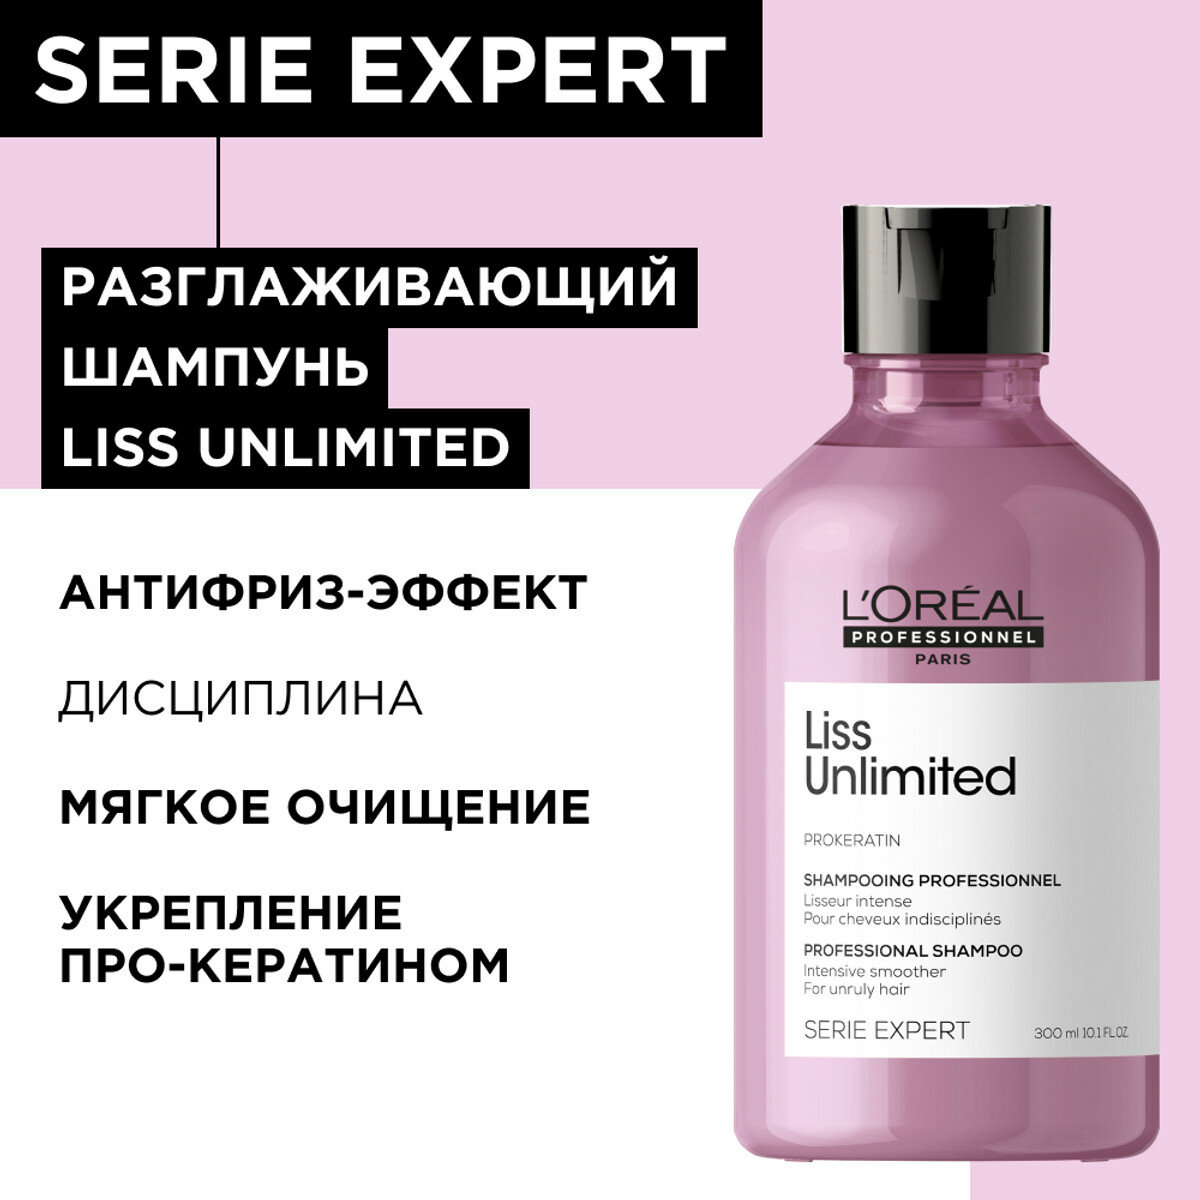 L'Oreal Professional Liss Unlimited - Шампунь для непослушных и вьющихся волос 300 мл реновация E3554900